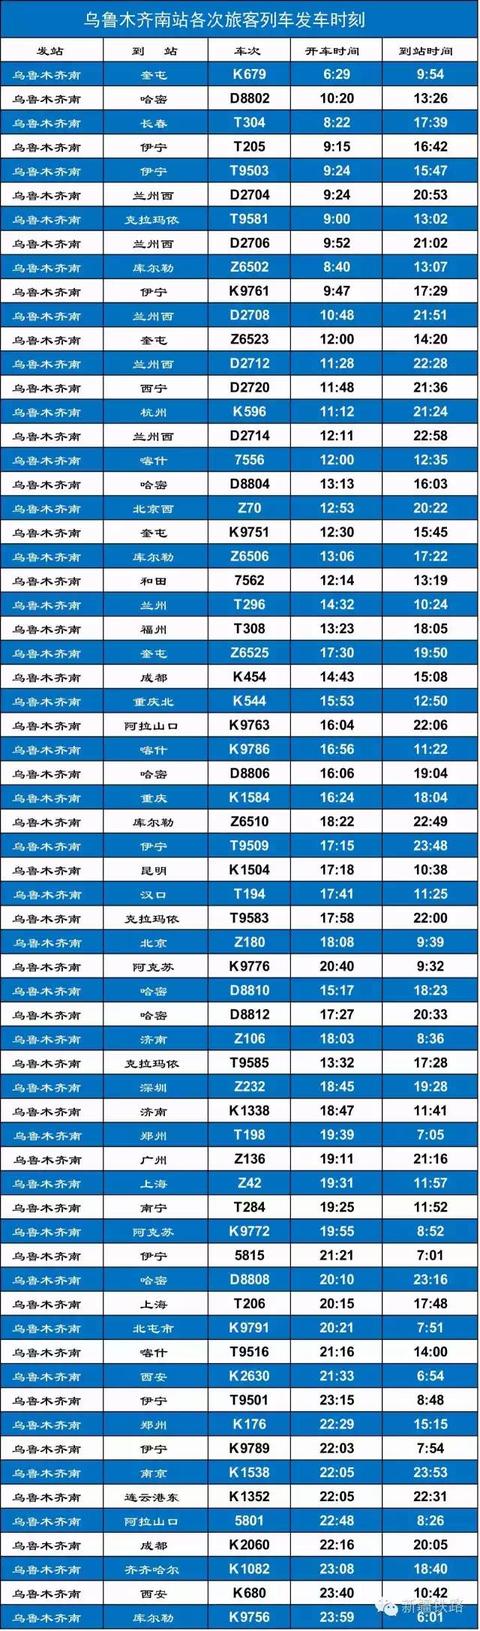 乌鲁木齐出疆列车时刻表（权威发布乌鲁木齐南站最新旅客列车到发时刻表）